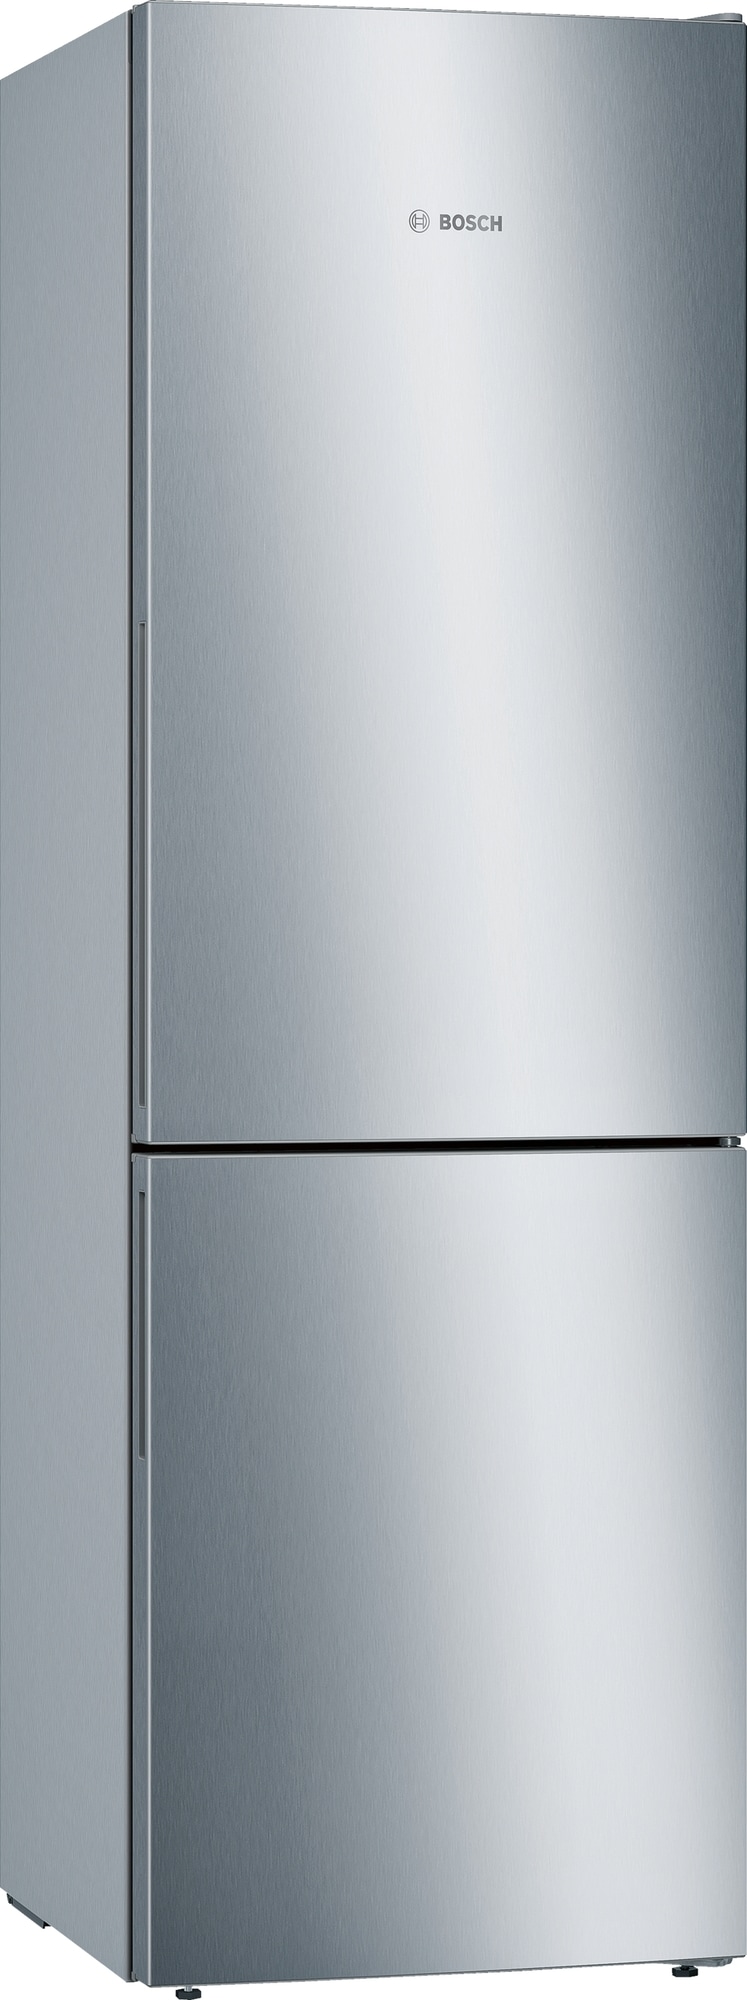 Bosch Serie 6 køleskab og fryser KGE36AICA (stål)